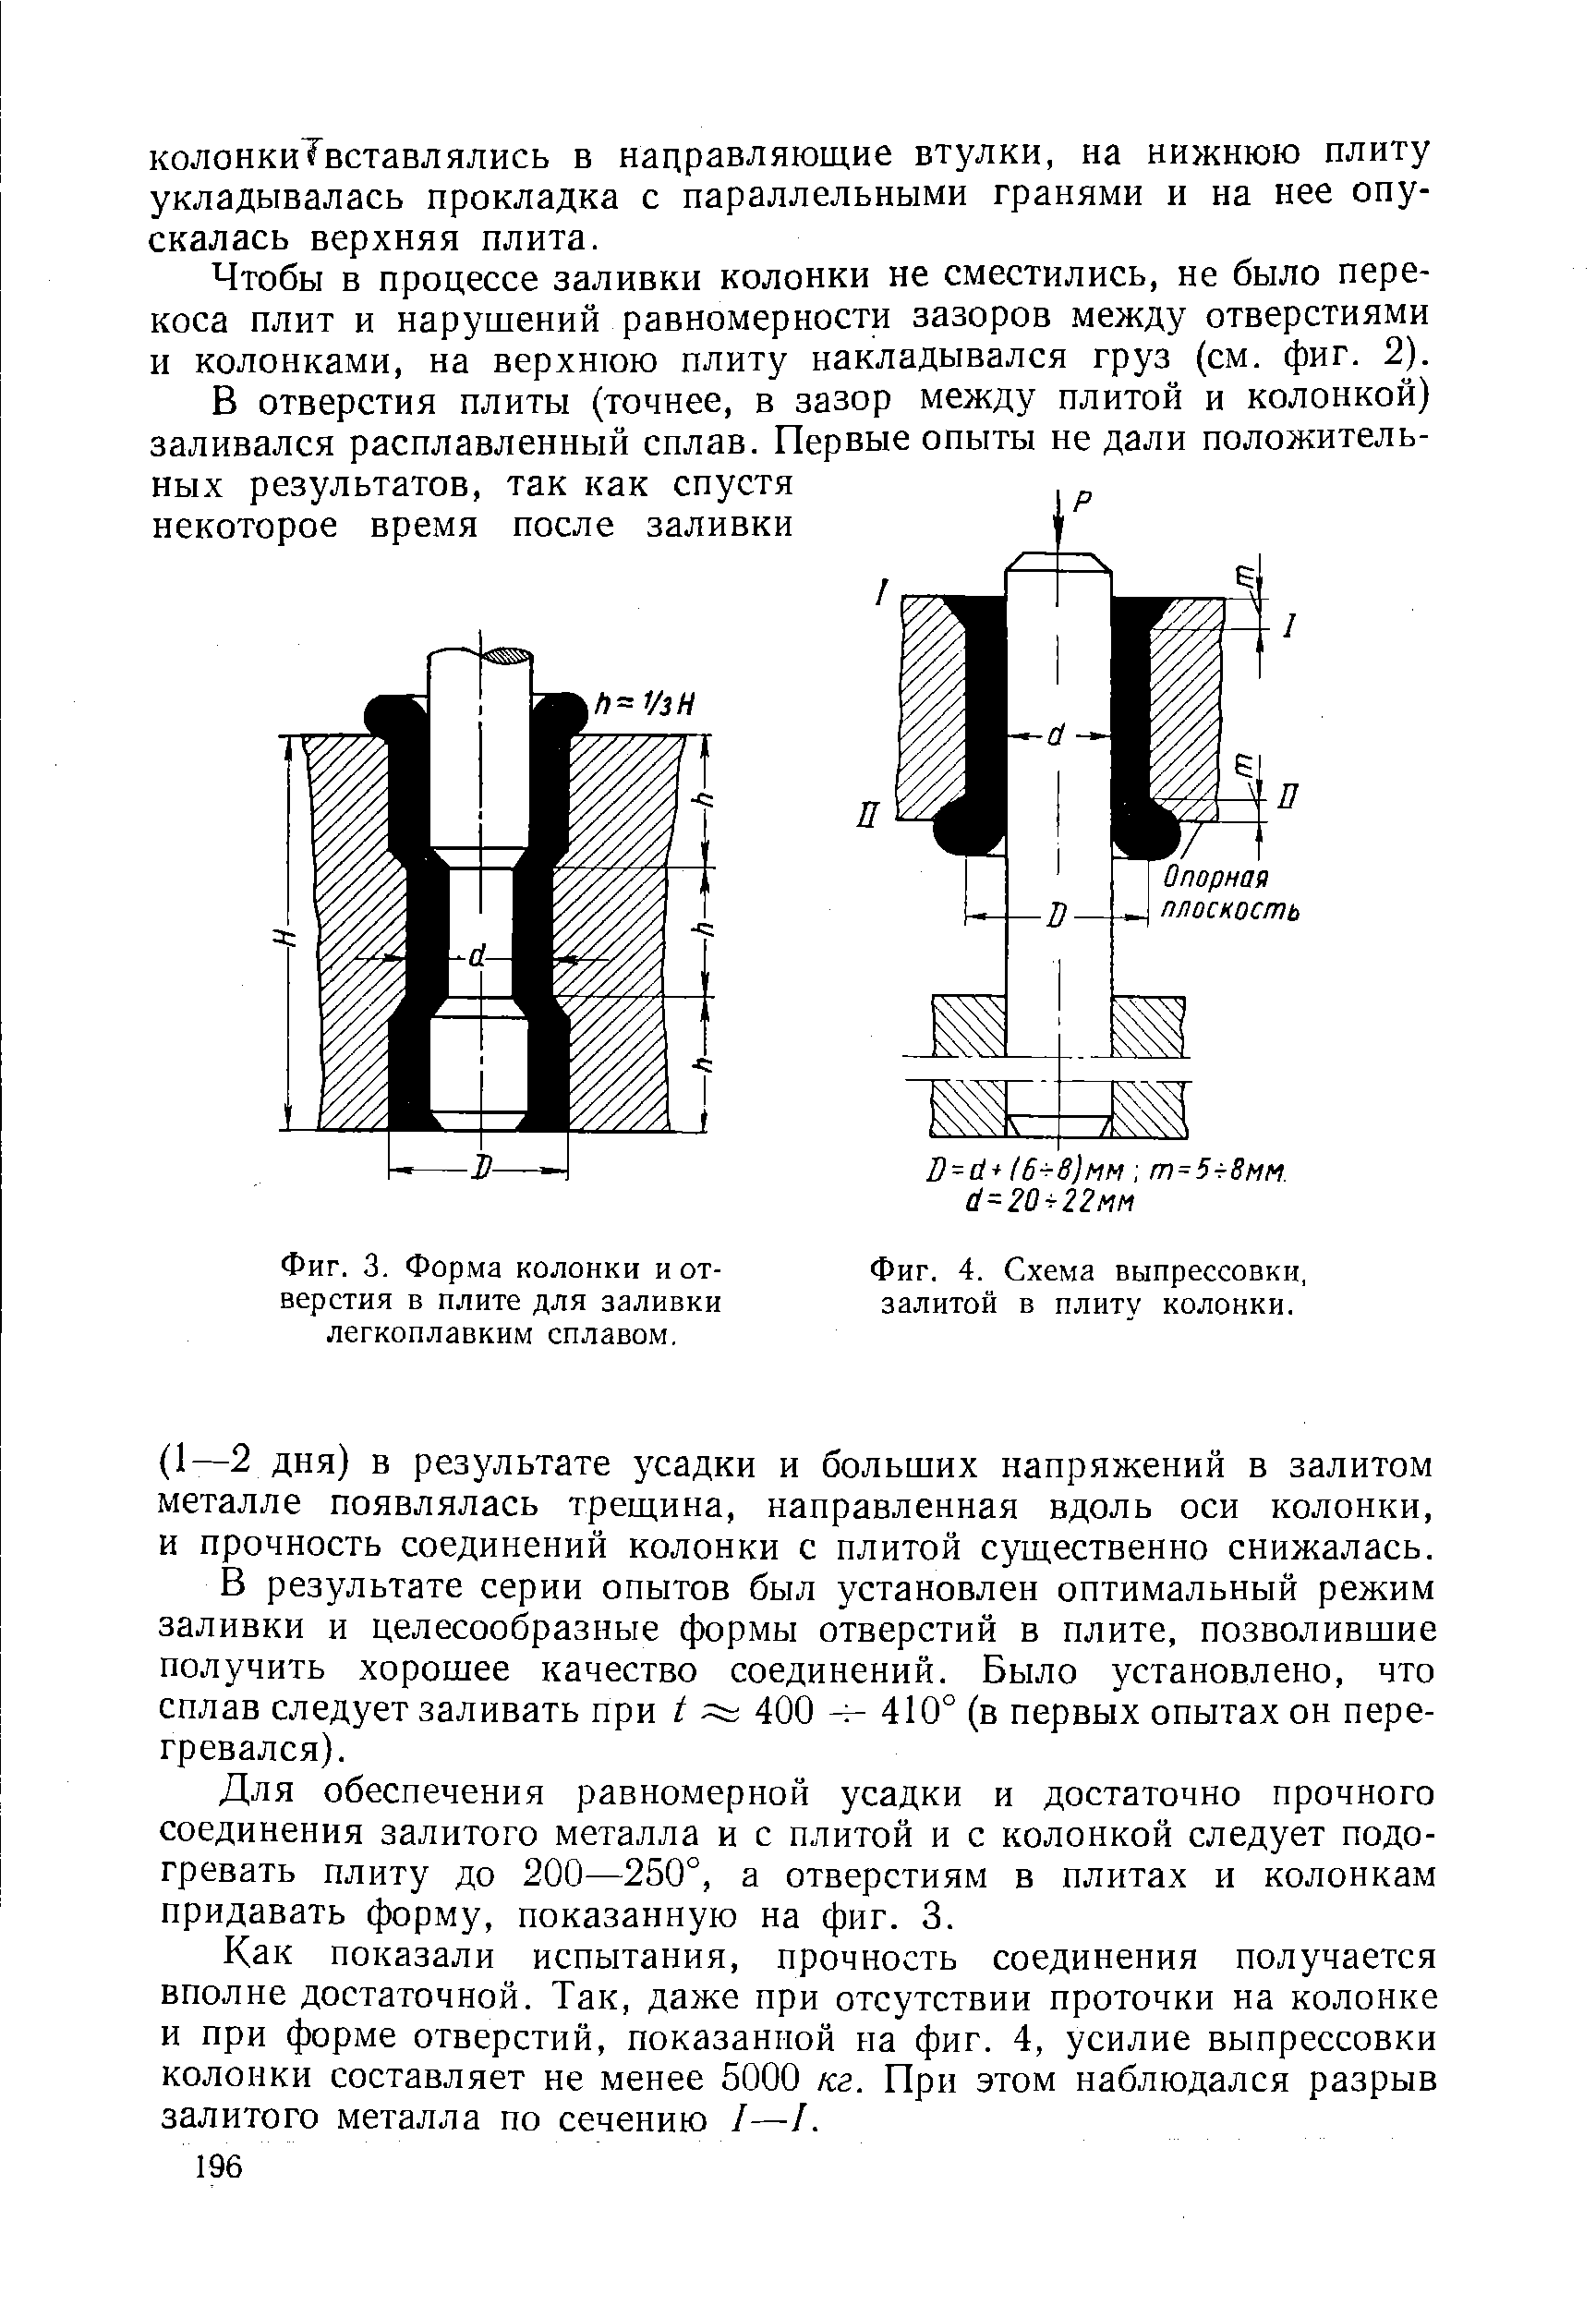 Фиг. 3. Форма колонки и отверстия Б плите для заливки легкоплавким сплавом.
